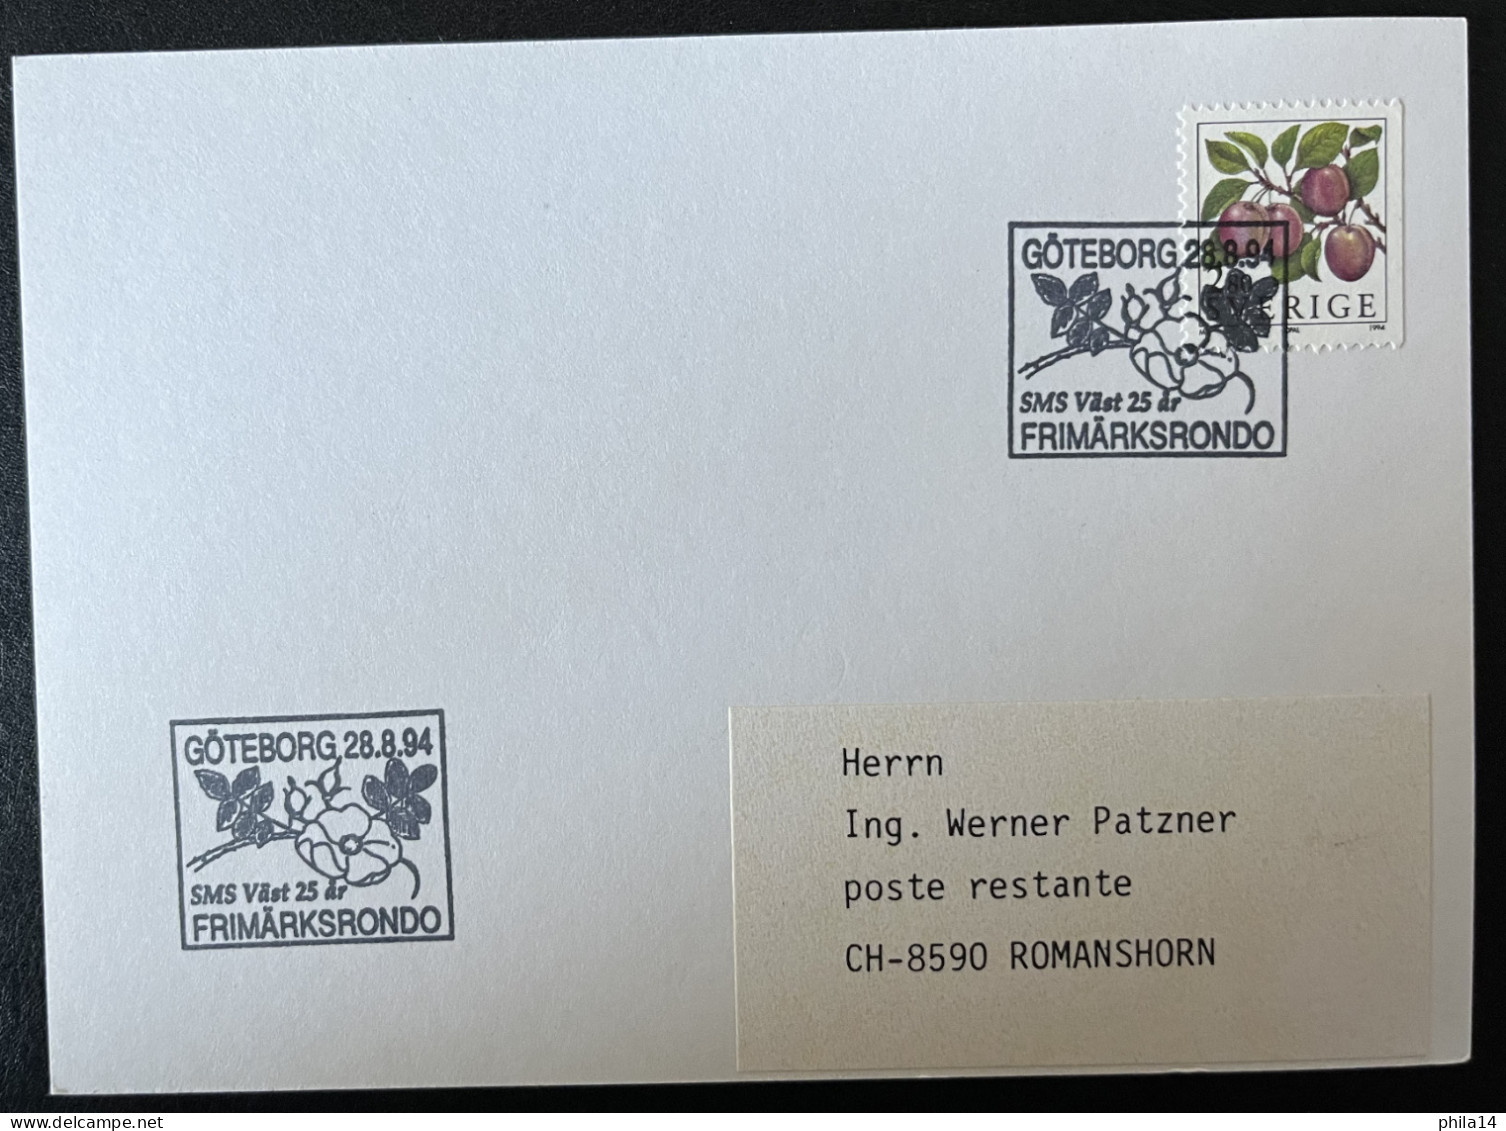 SP CARTE / FRUIT PRUNES / 1994 / GOTEBORG SUEDE SVERIGE FRIMARKSRONDO - Lettres & Documents